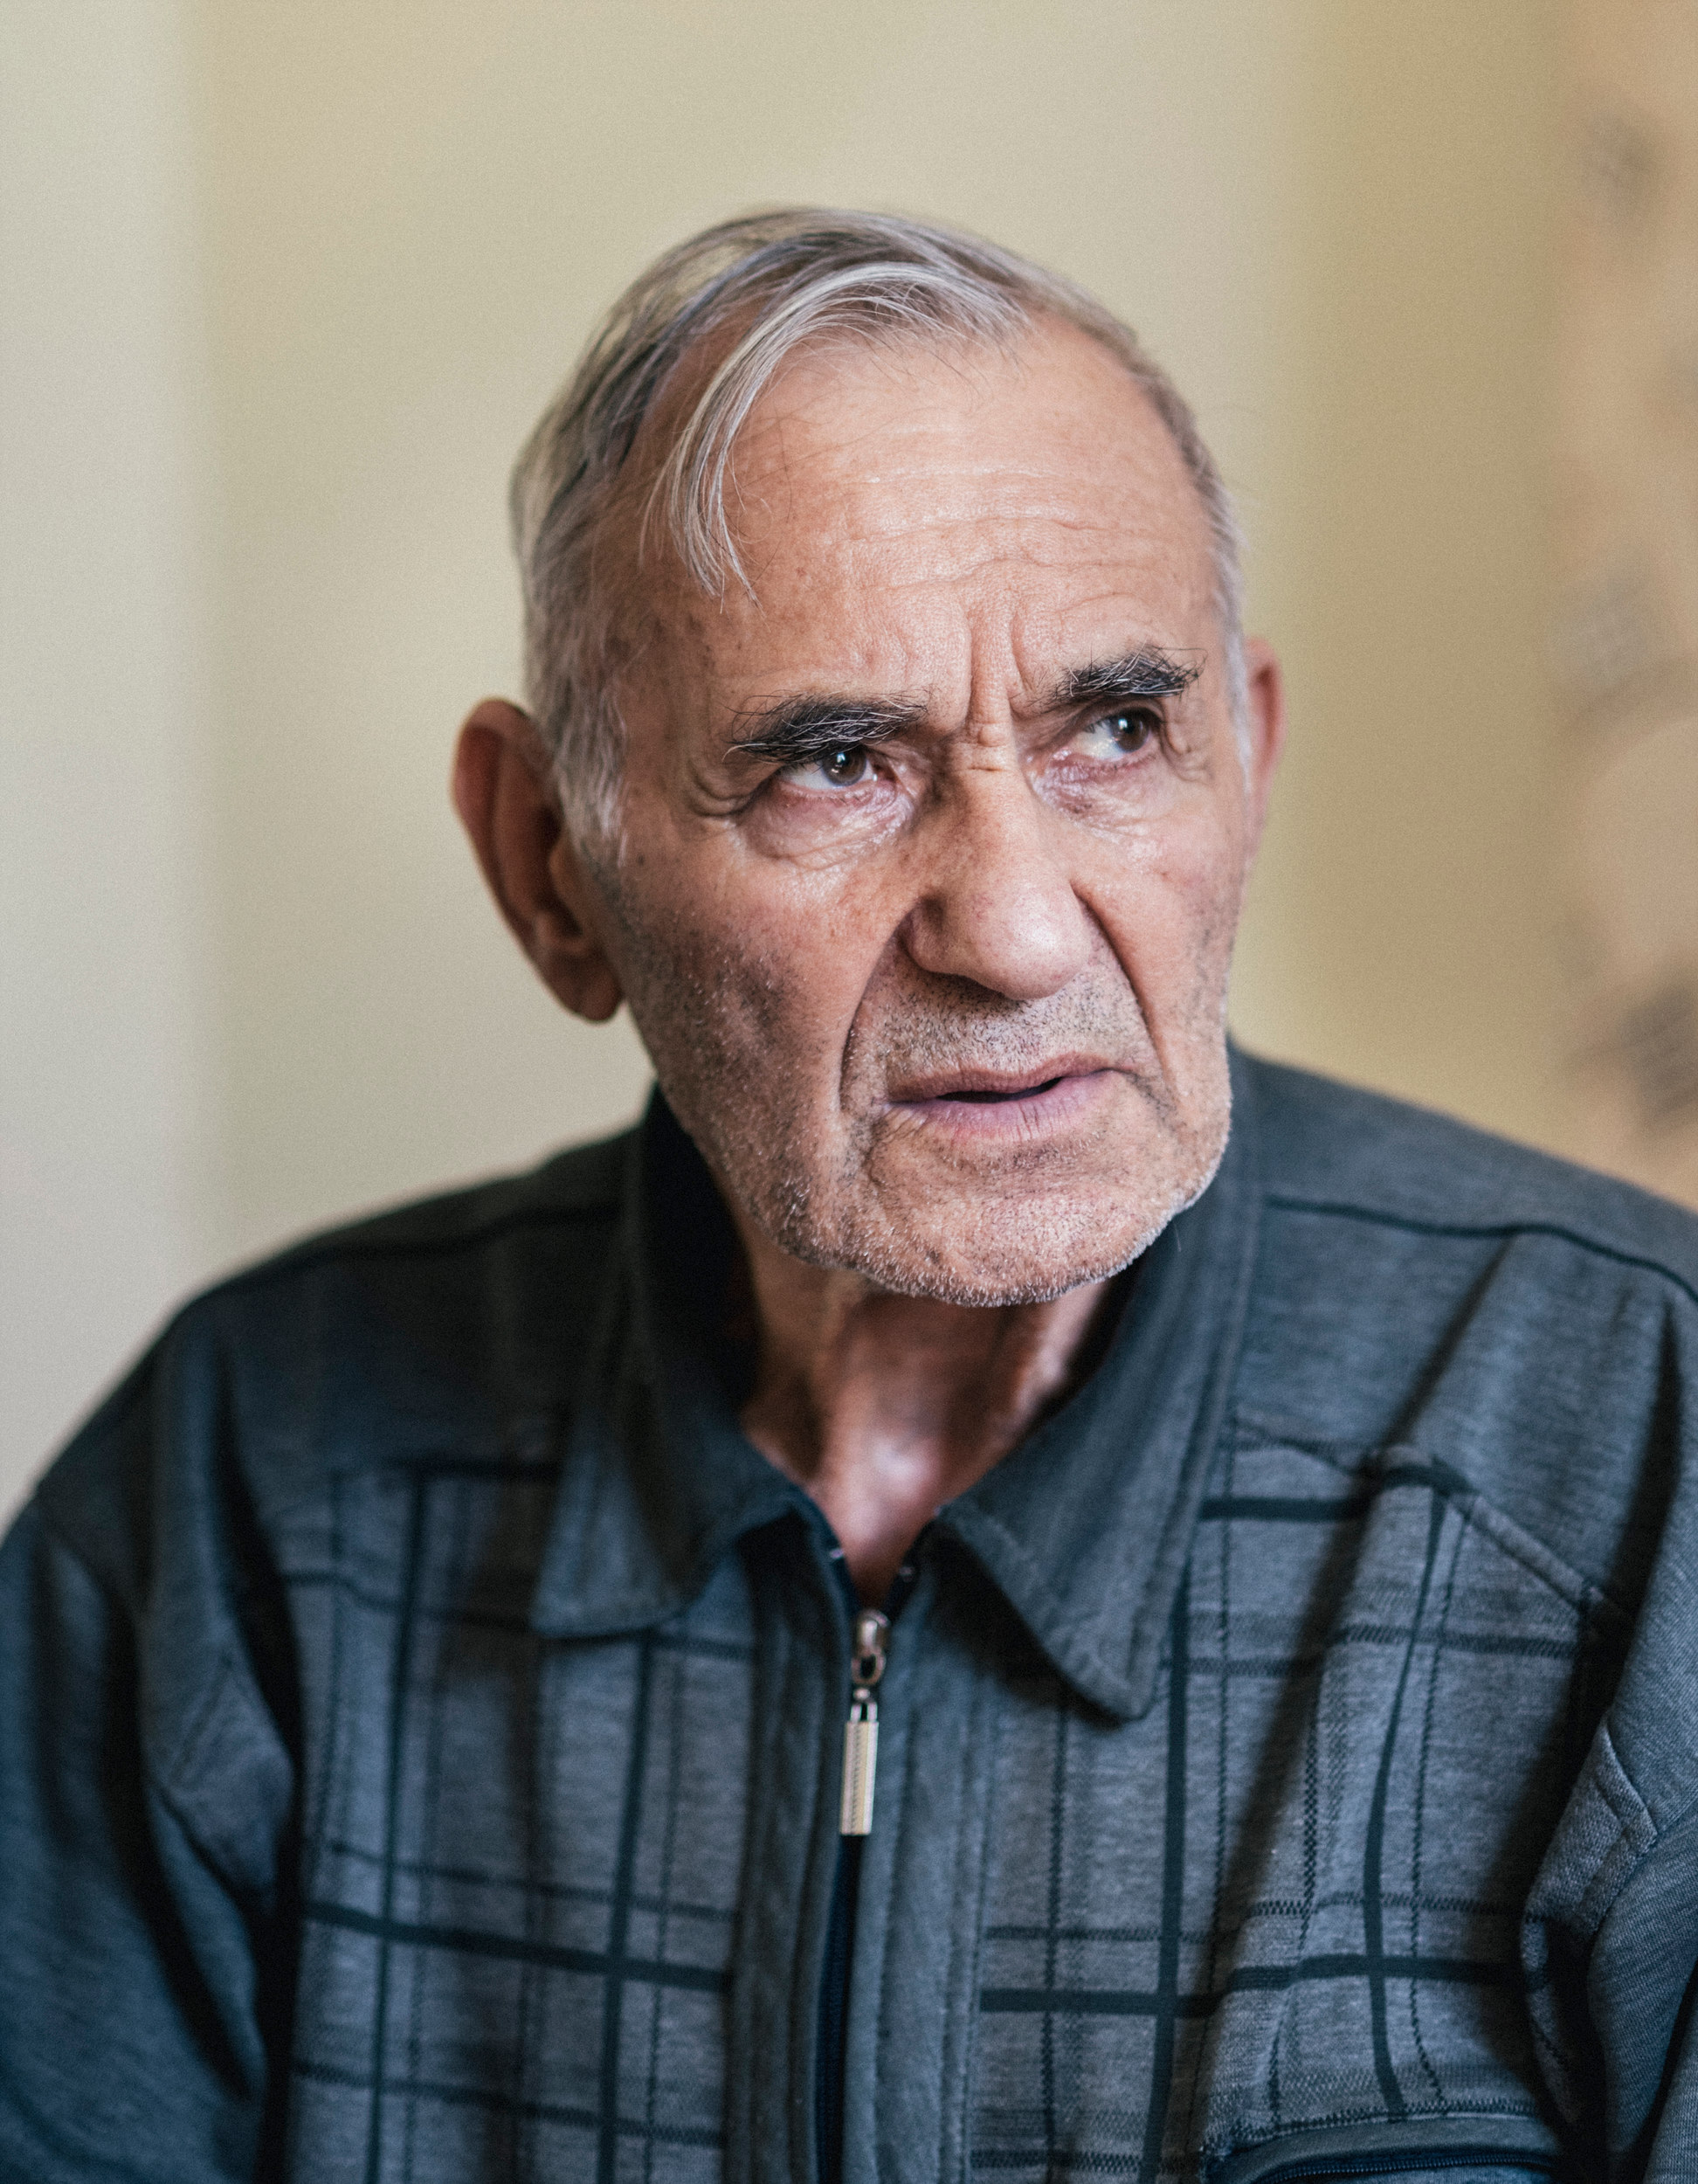 Кемаль Ага Куку, 82 роки, згадує ніч депортації в 1944-му: погляд зелено-жовтих очей російських солдатів, які тримали в його роті пістолет і змусили його сім’ю покинути батьківщину, закарбувався в пам’яті чоловіка. Незважаючи ні на що, Кемаль покладав великі надії на Росію. Він був одним із небагатьох кримських татар, хто відкрито висловився за референдум. Він був гірко розчарований, коли ФСБ спробувала викрасти його сина 20 квітня 2015 року.